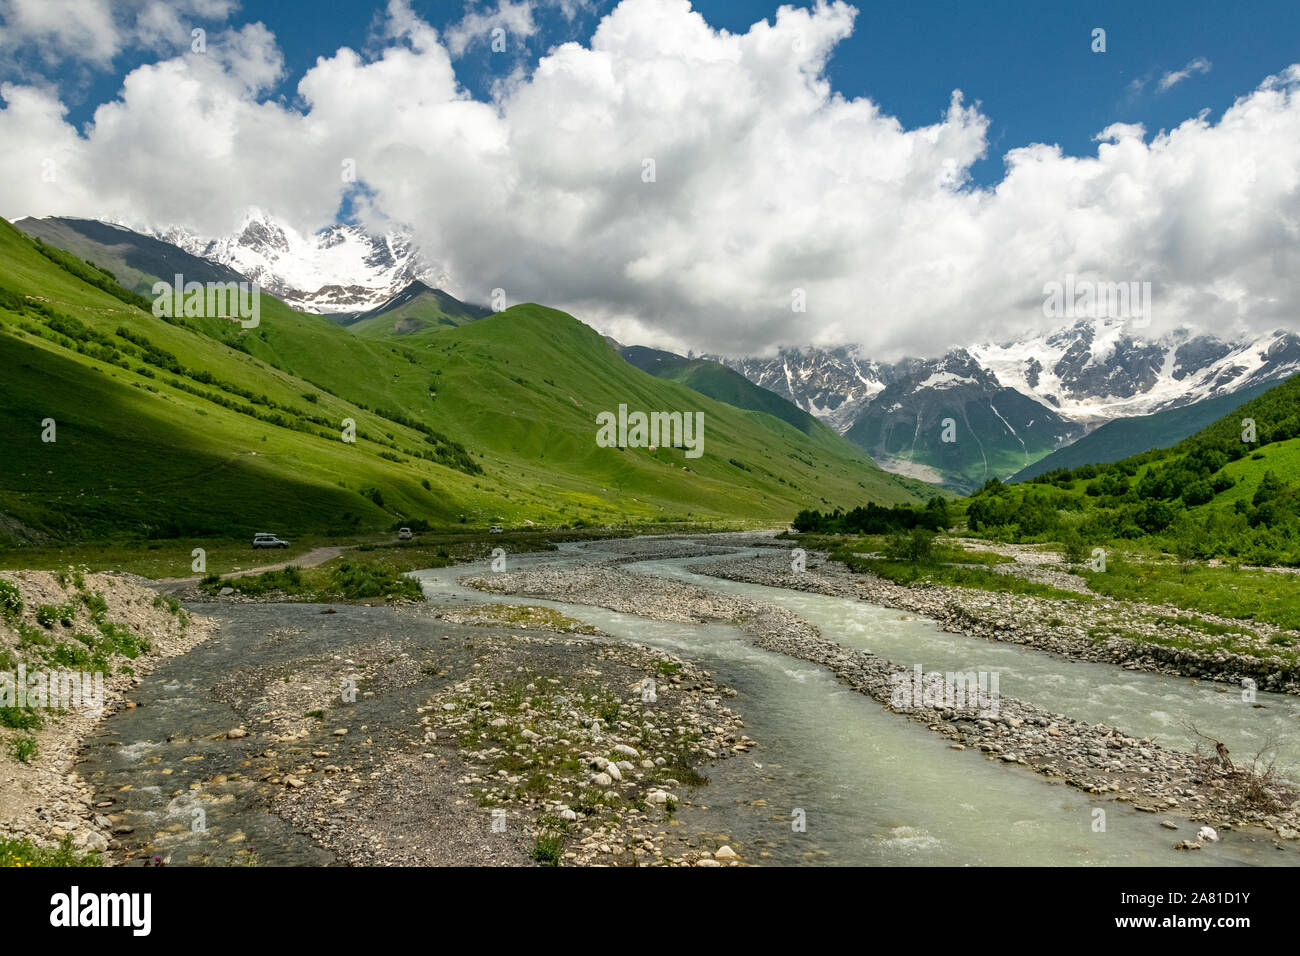 Paysage d'été de la vallée verte dans les montagnes du Caucase avec la rivière Patara Enguri qui coule du glacier Shkhara. Ushguli, Svaneti Géorgie. Banque D'Images